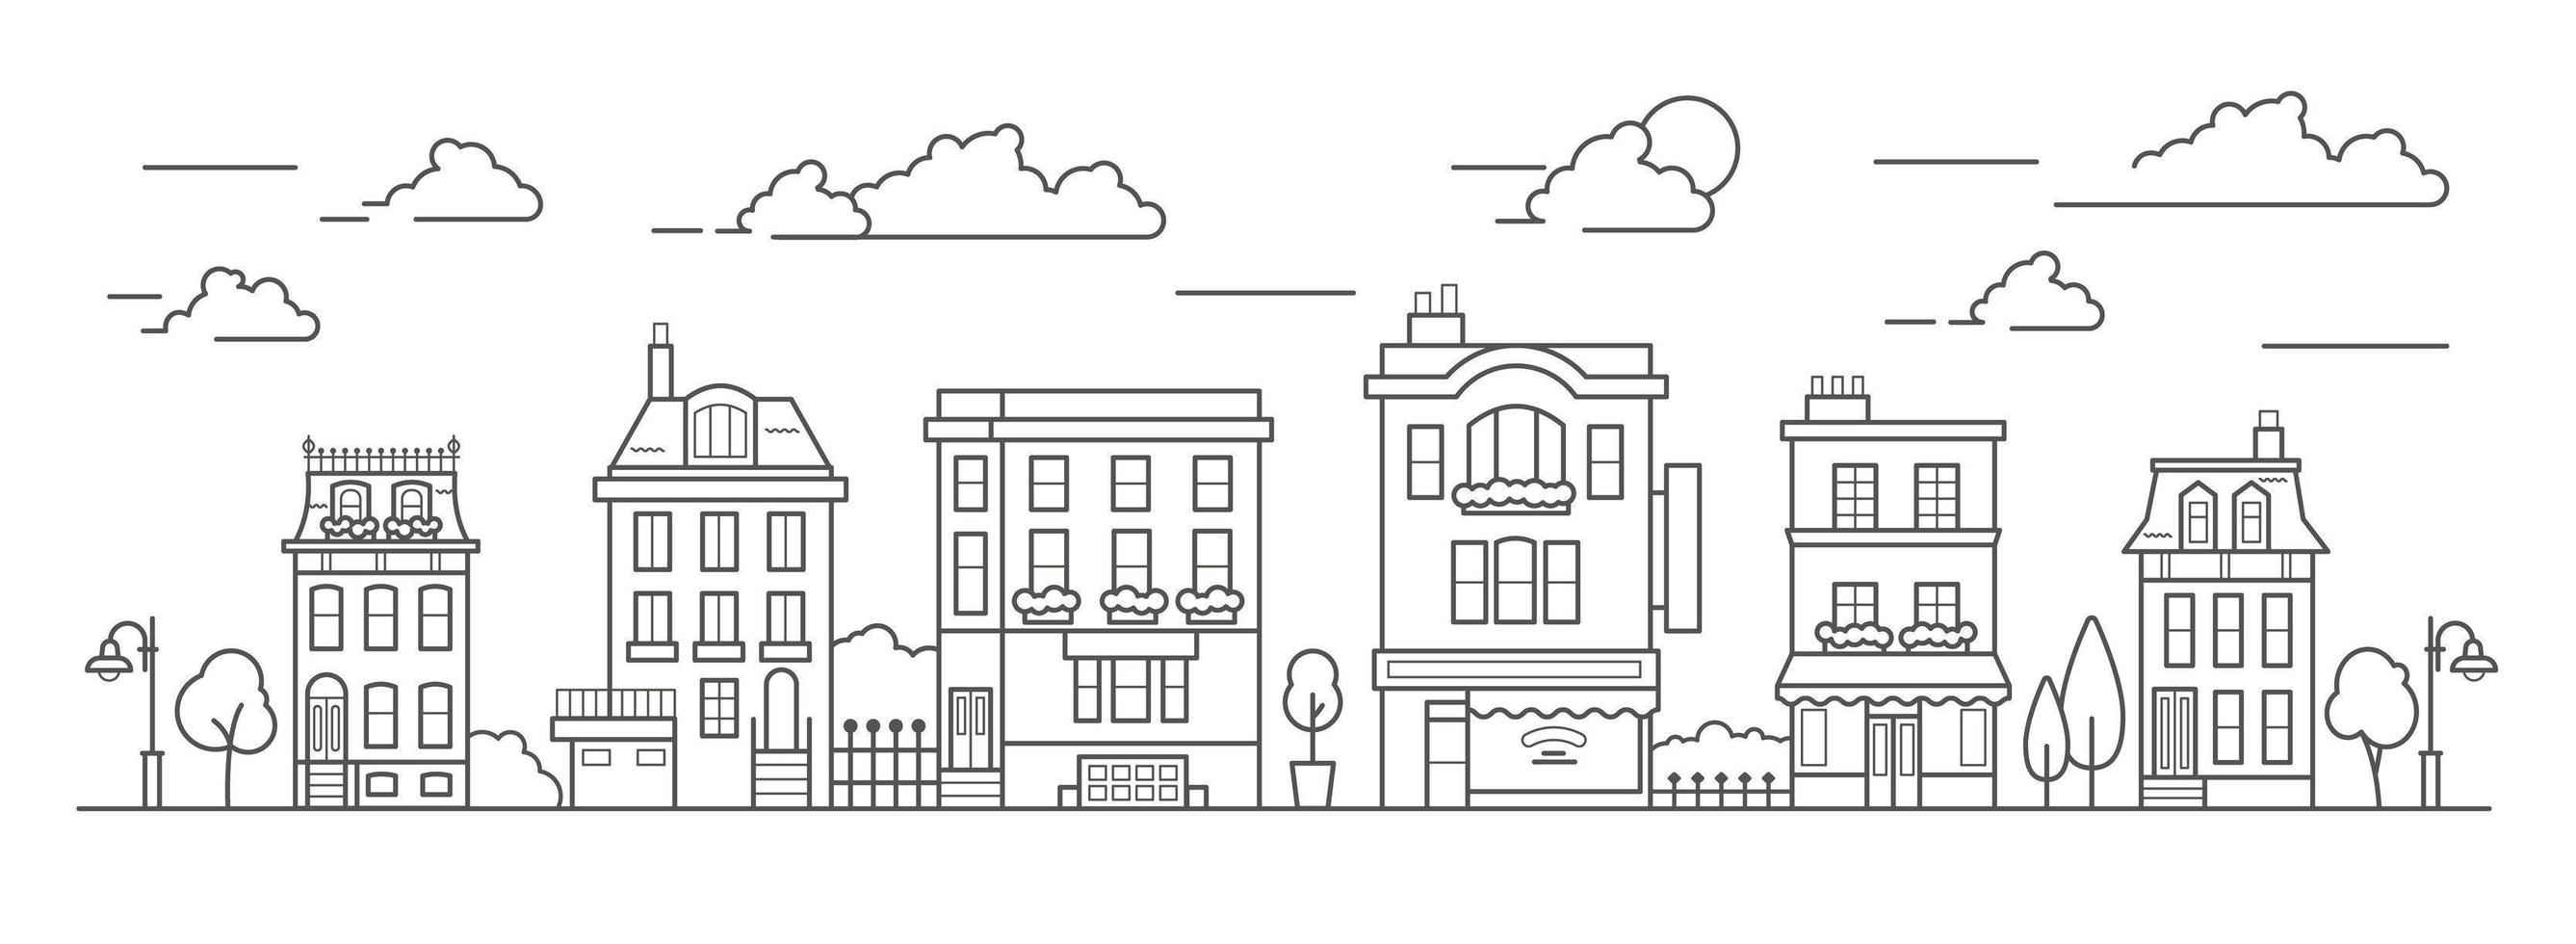 paysage dans le style d'art en ligne. décrivez la rue avec des maisons, un bâtiment, un arbre et des nuages. café, pharmacie, hôtel et arrêt de bus. vecteur